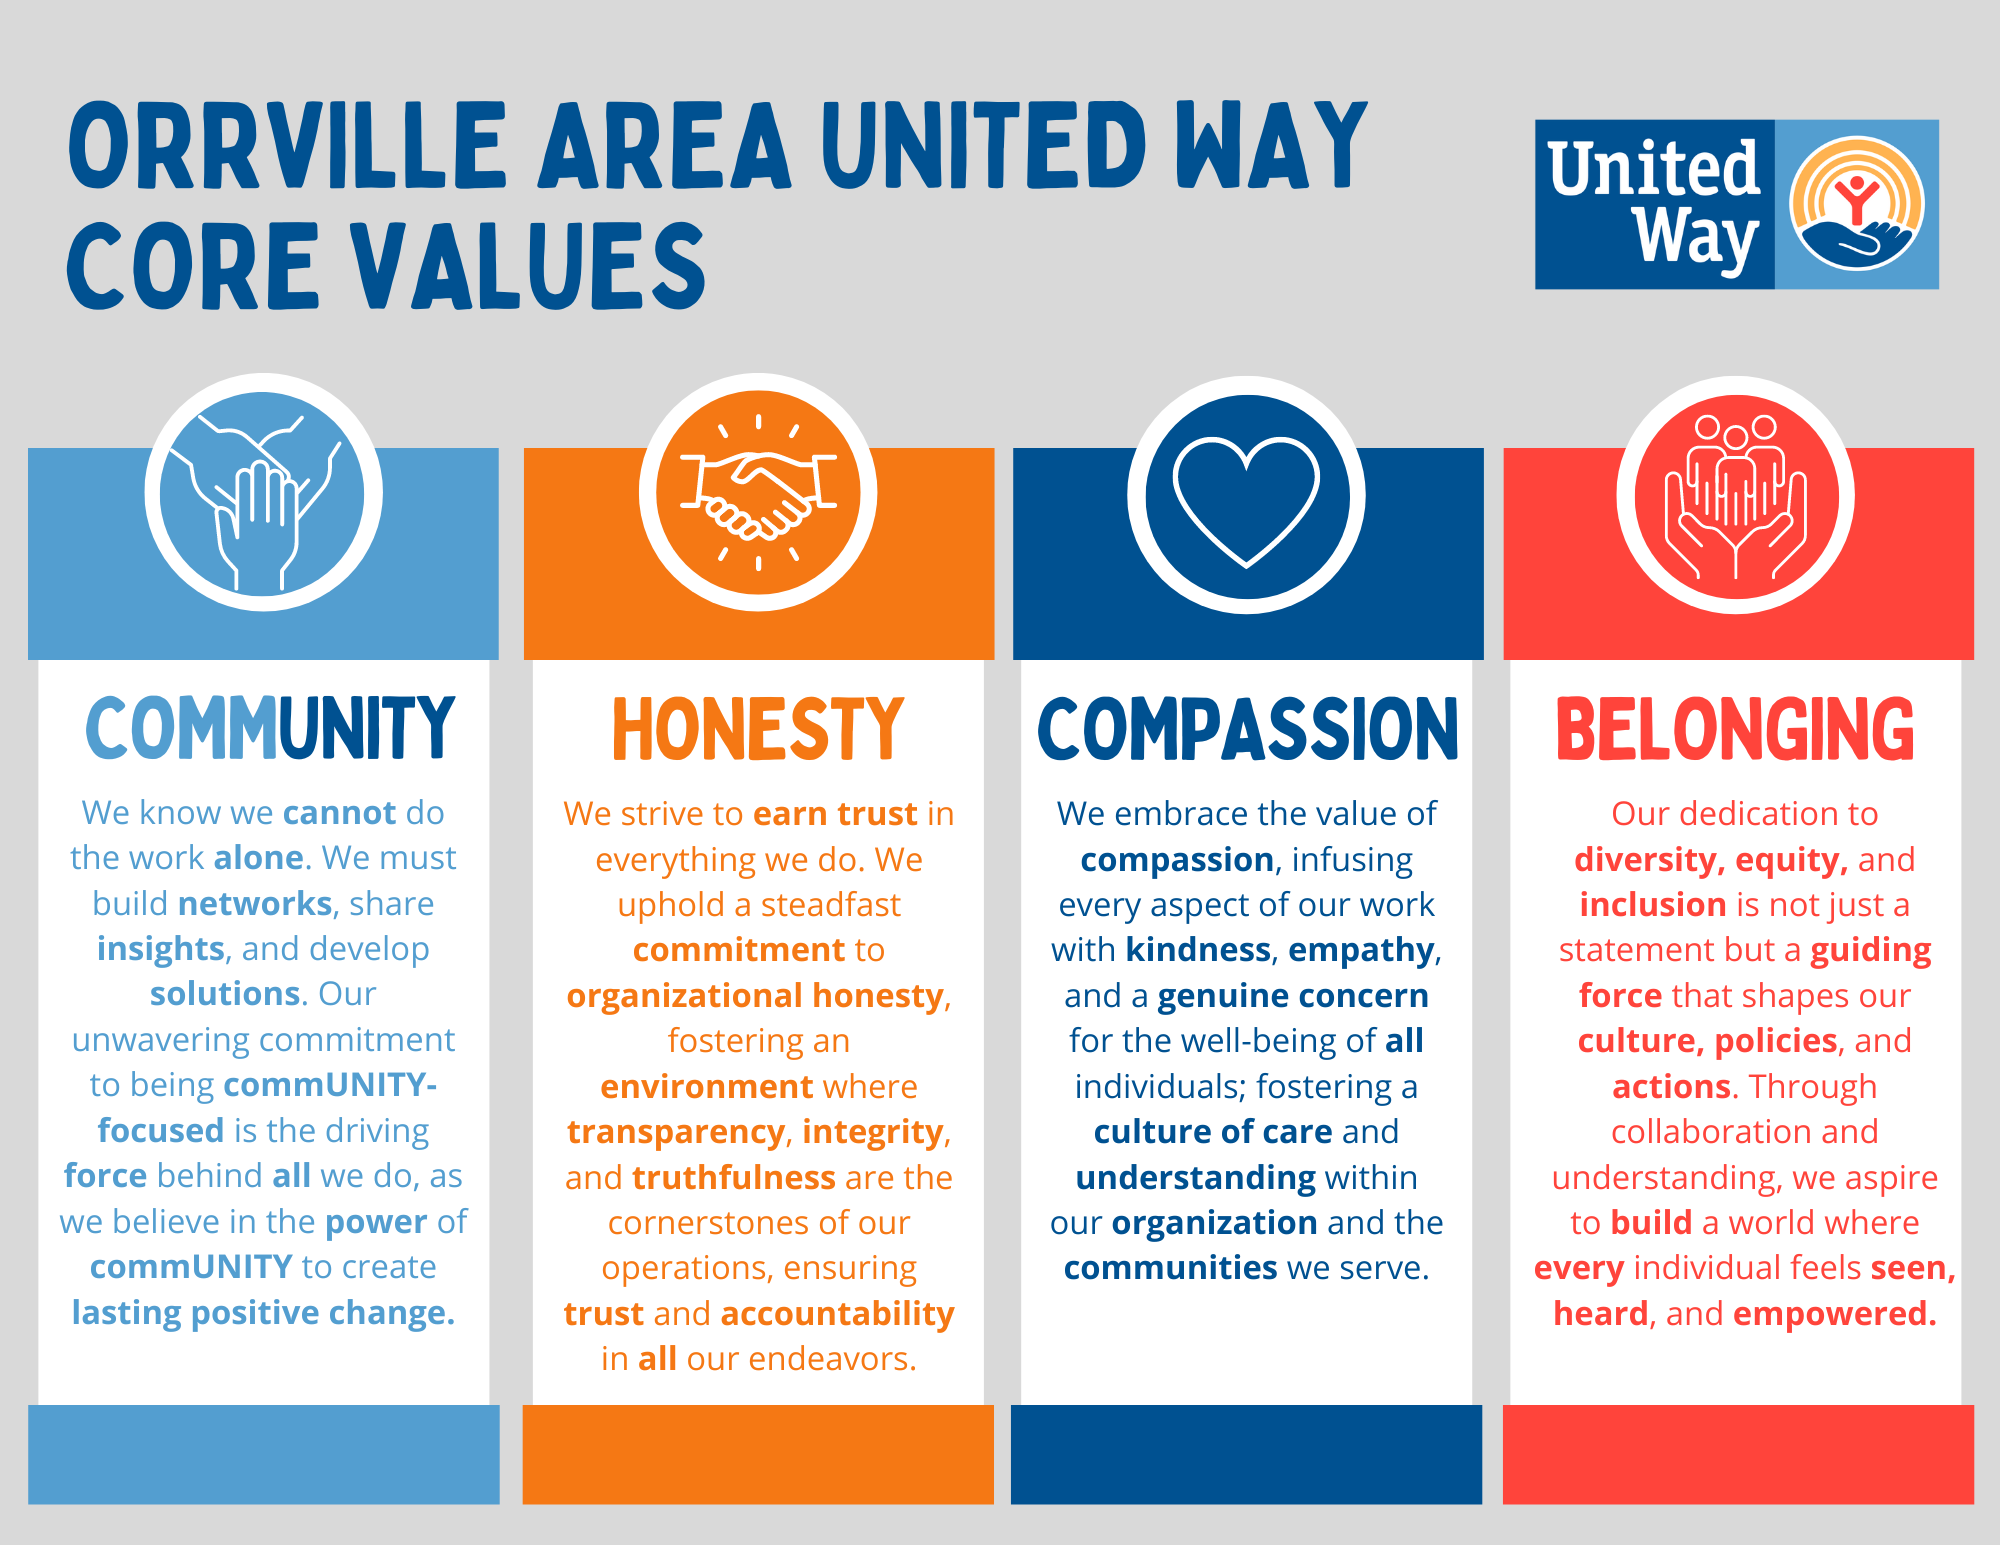 Our Core Values - Community, Honest, Compassion, Belonging